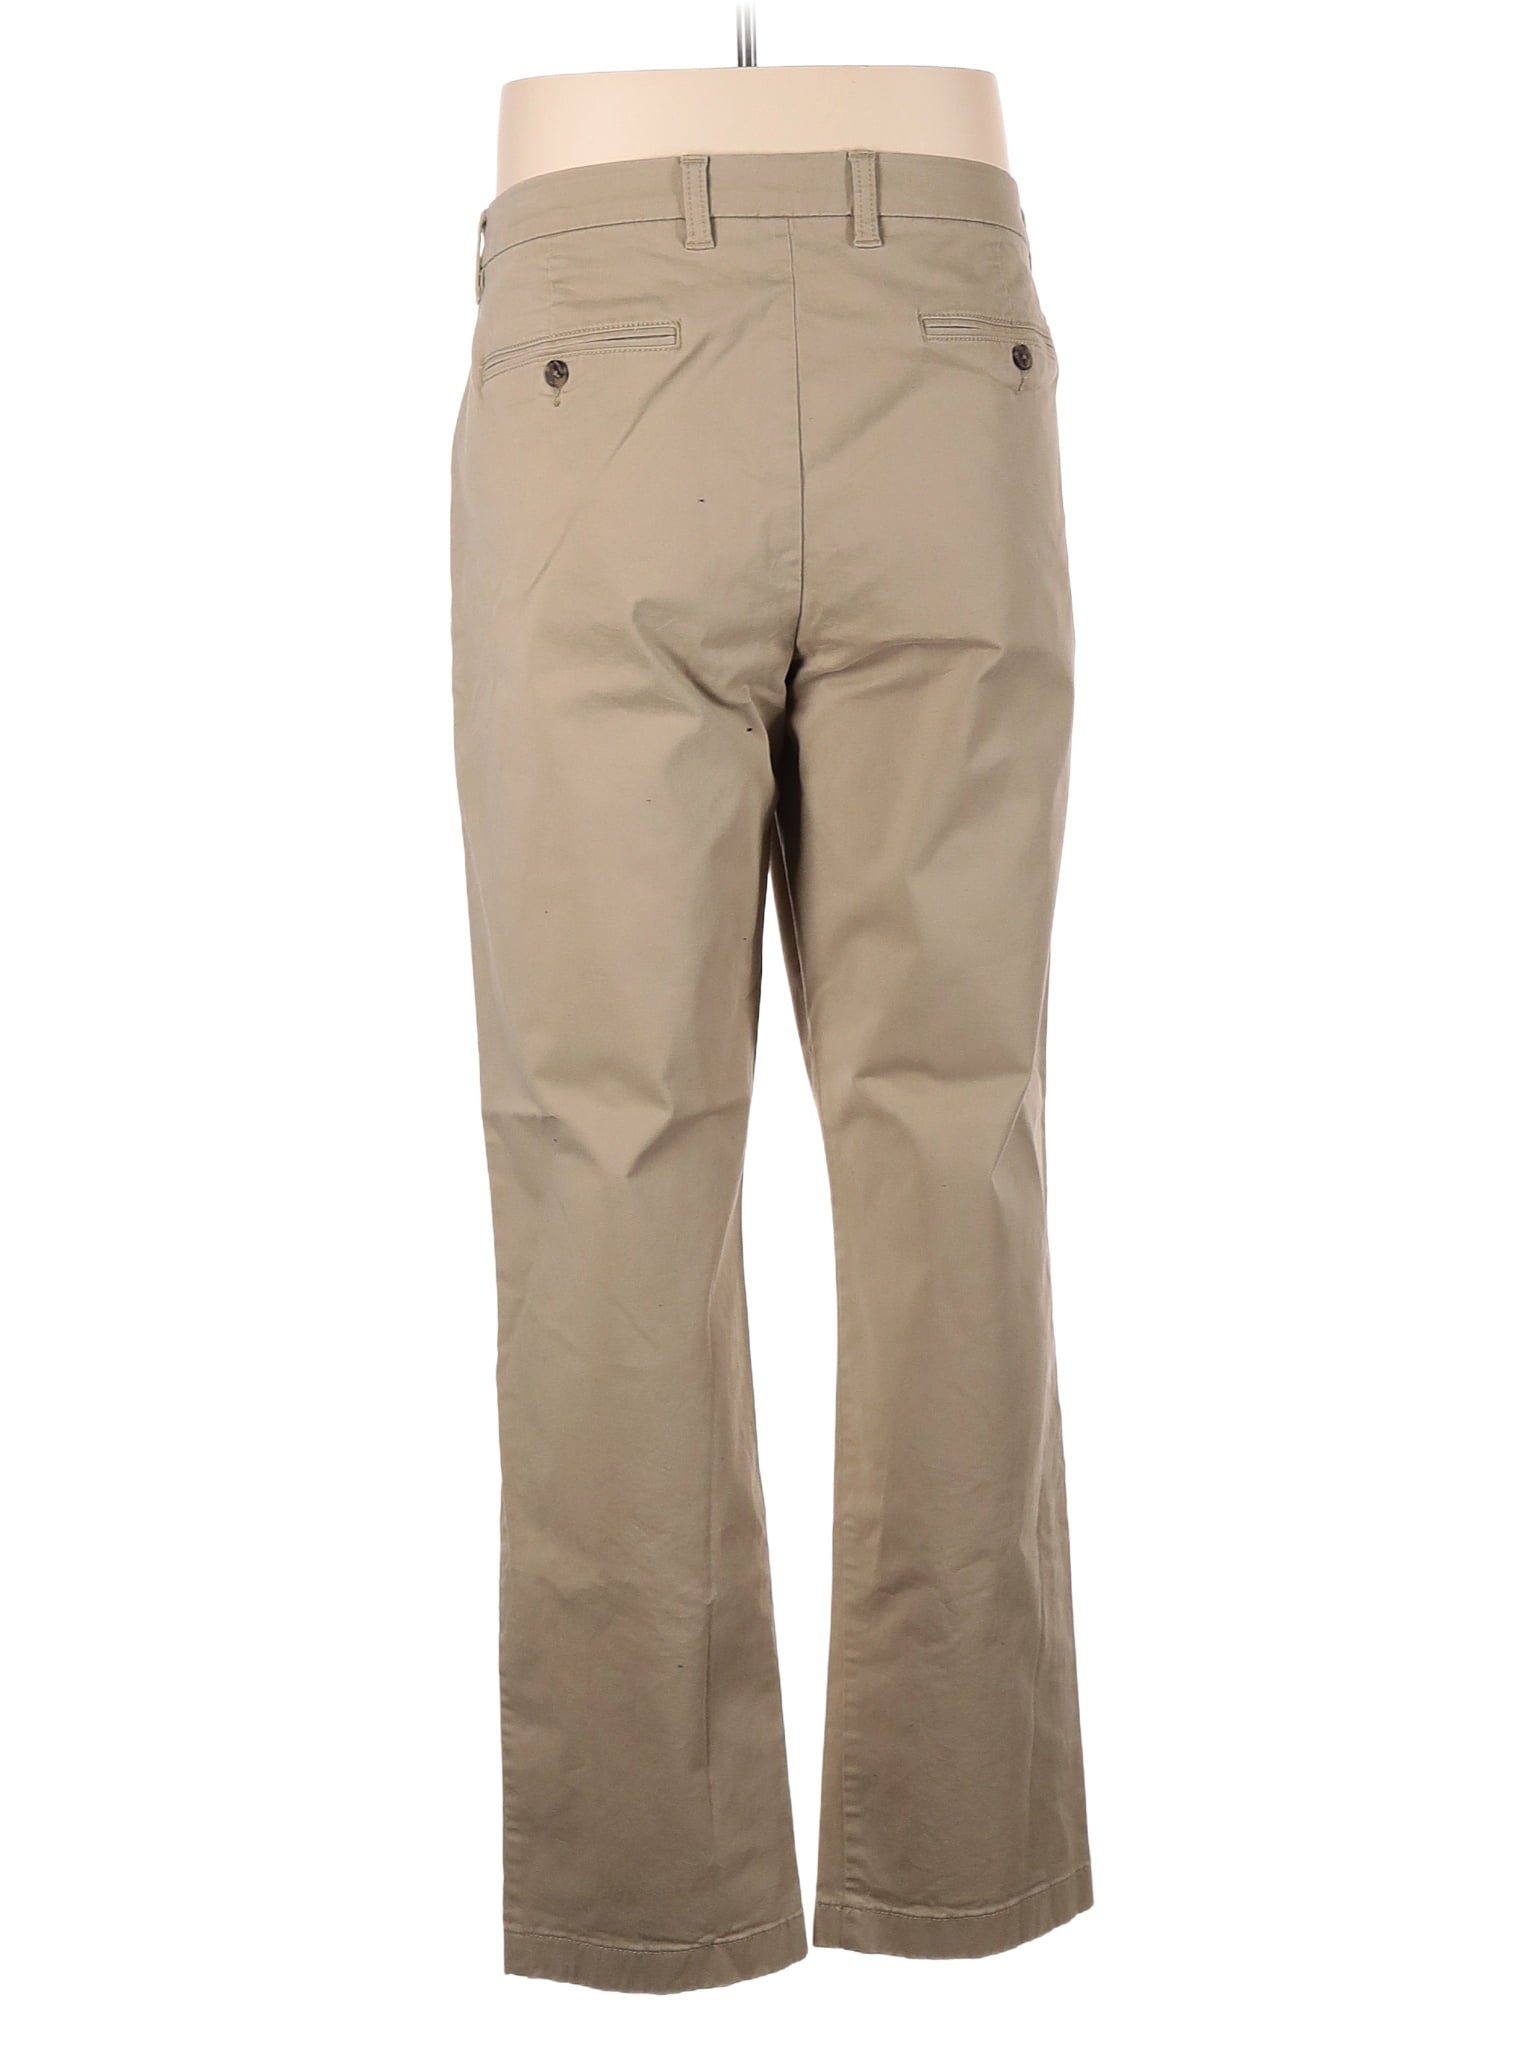 Khaki/Chino Pants size - 36 (W36 L32)